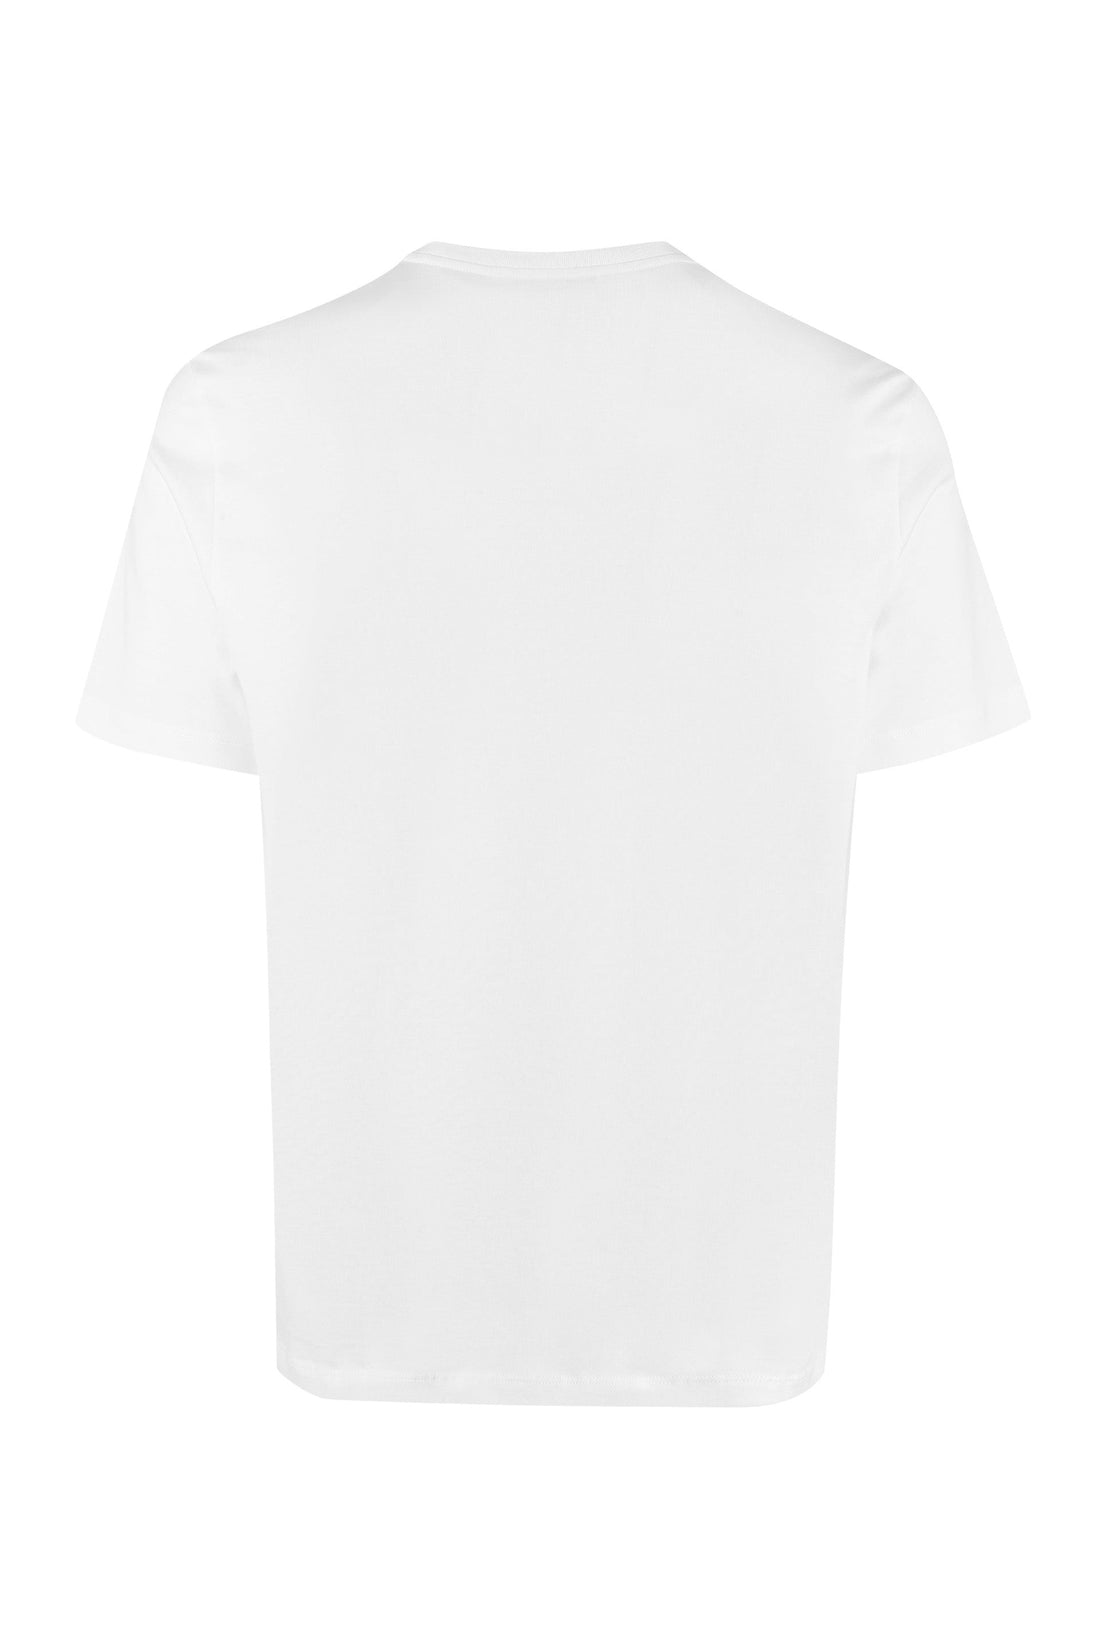 Versace-OUTLET-SALE-Printed cotton T-shirt-ARCHIVIST